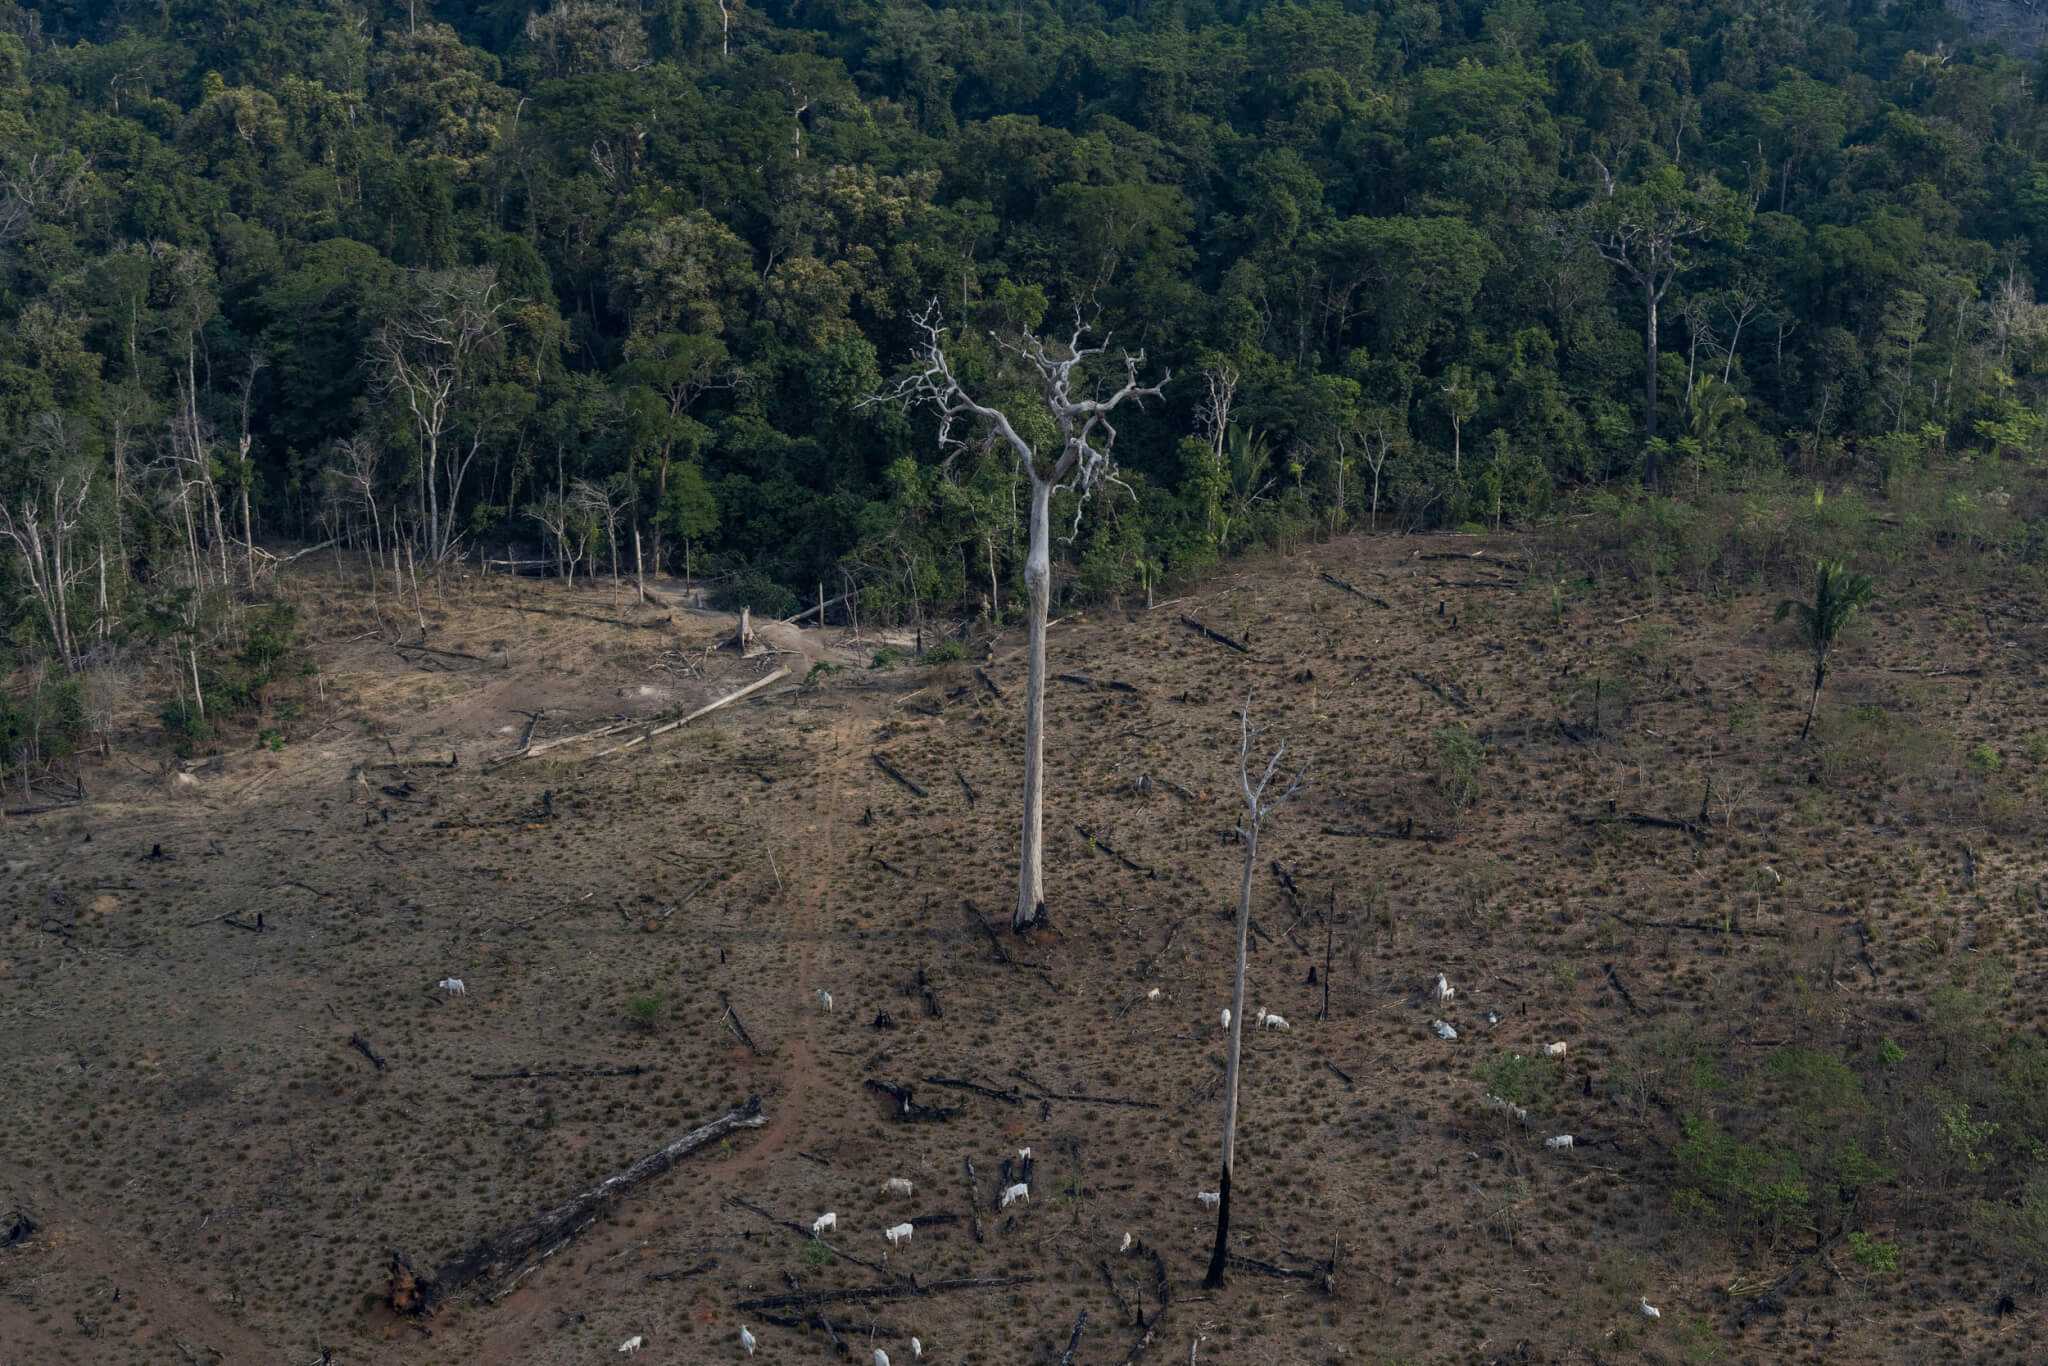 Agenda da Coalizão na COP 26 - Coalizão Brasil Clima, Florestas e